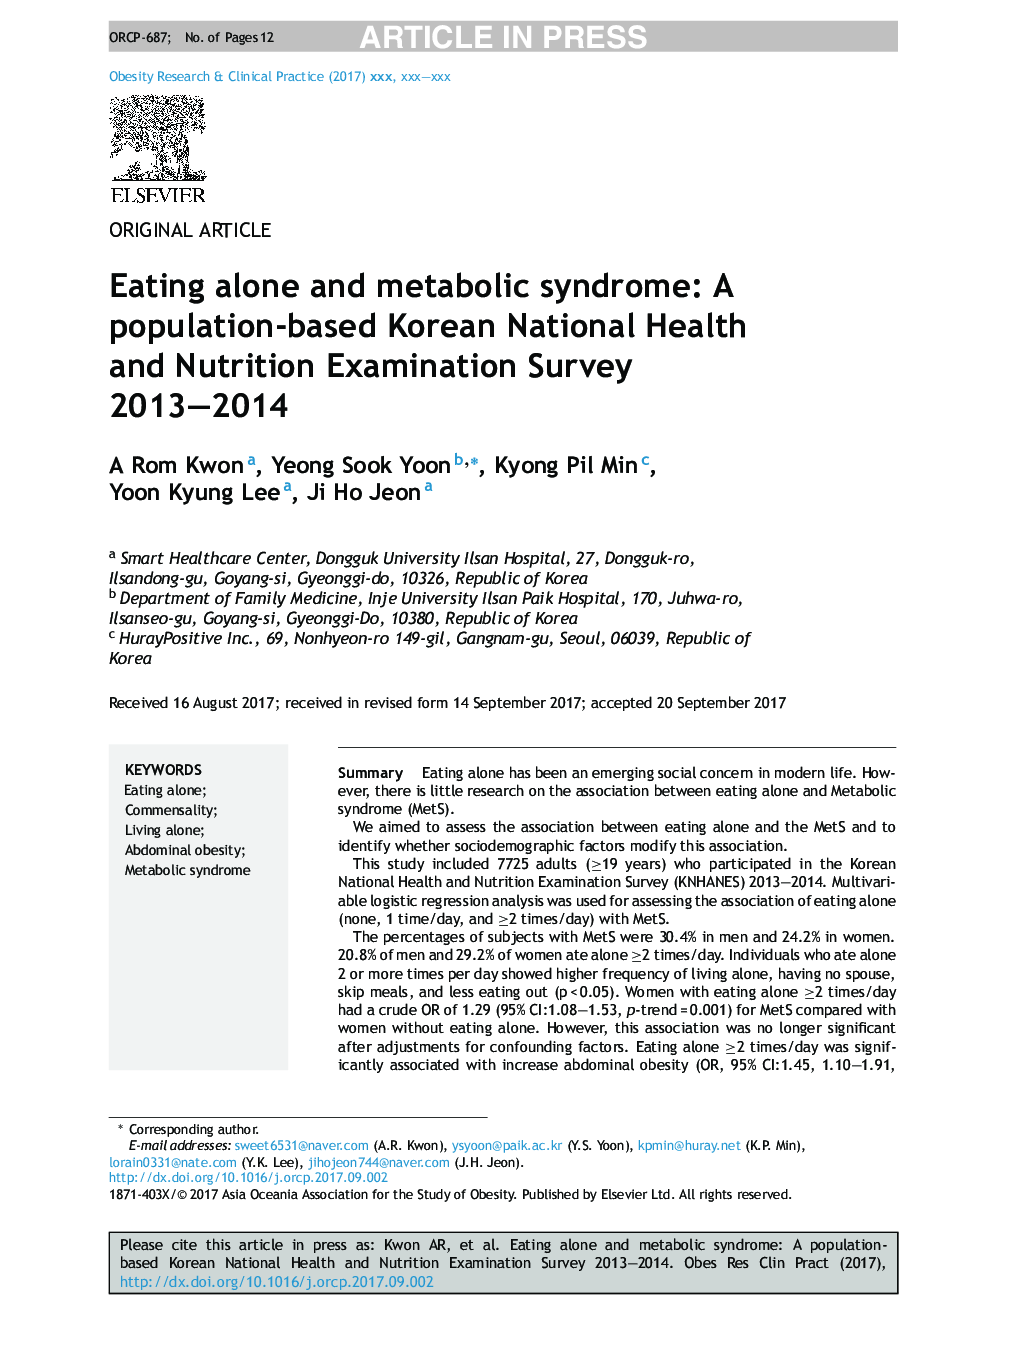 خوردن تنهایی و سندرم متابولیک: تحقیق در مورد بهداشت و تغذیه ملی کره جنوبی در سال 2013-2014 